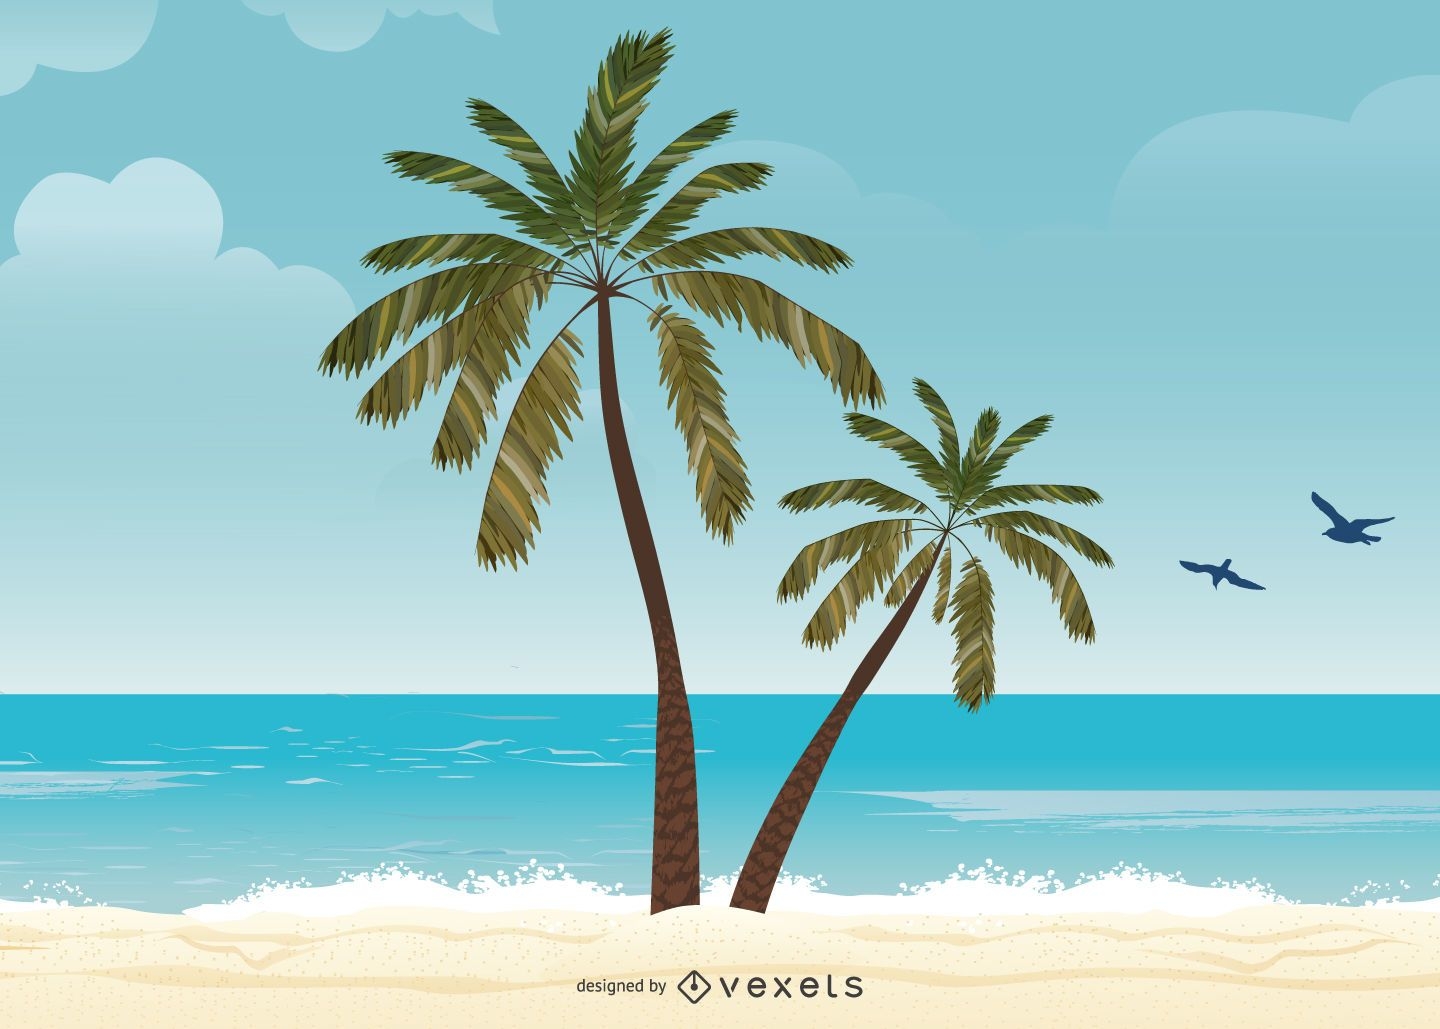 Ilustraci?n de la isla de verano con palmeras